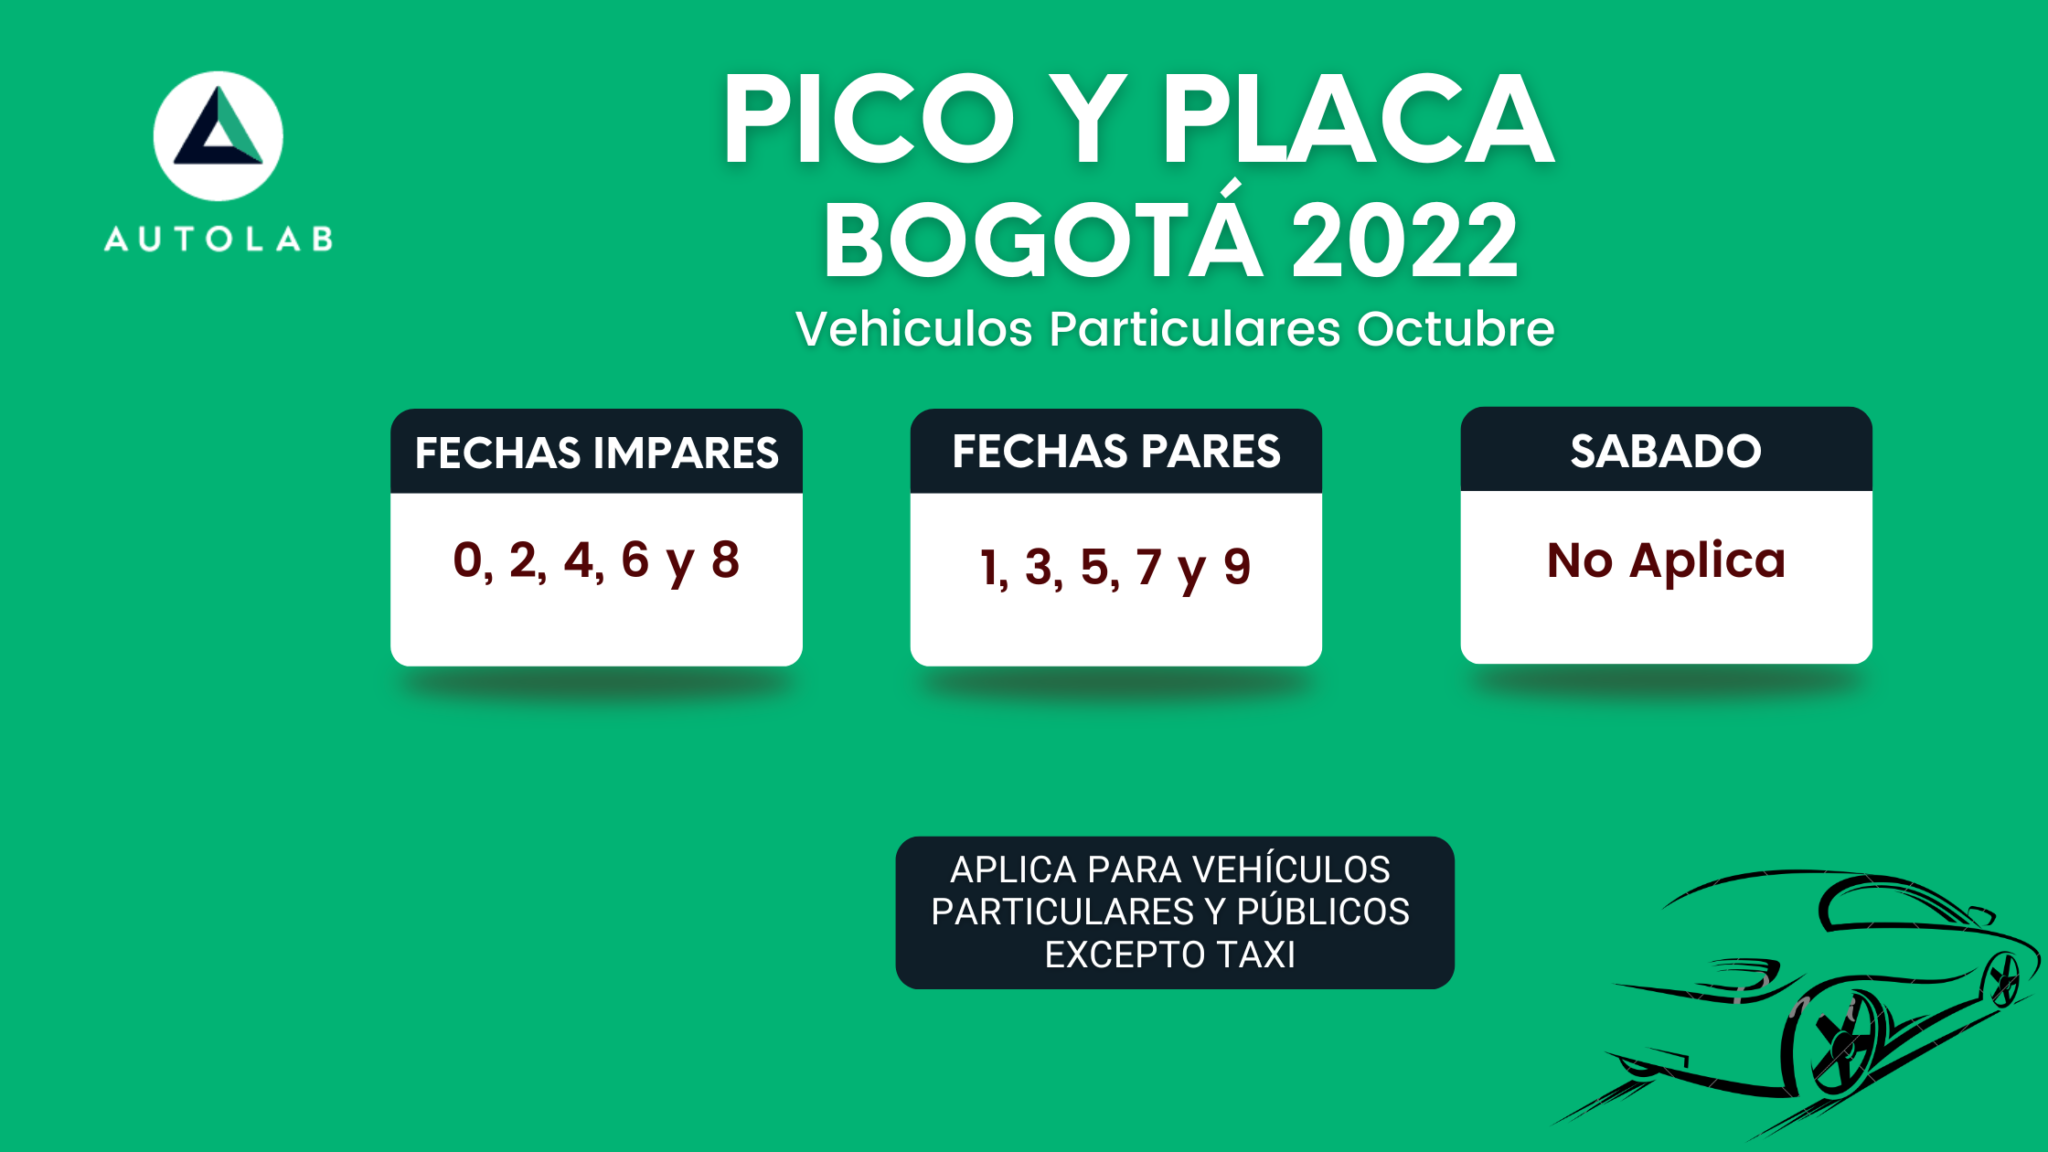 Pico y placa para particulares Bogotá 2022 Autolab